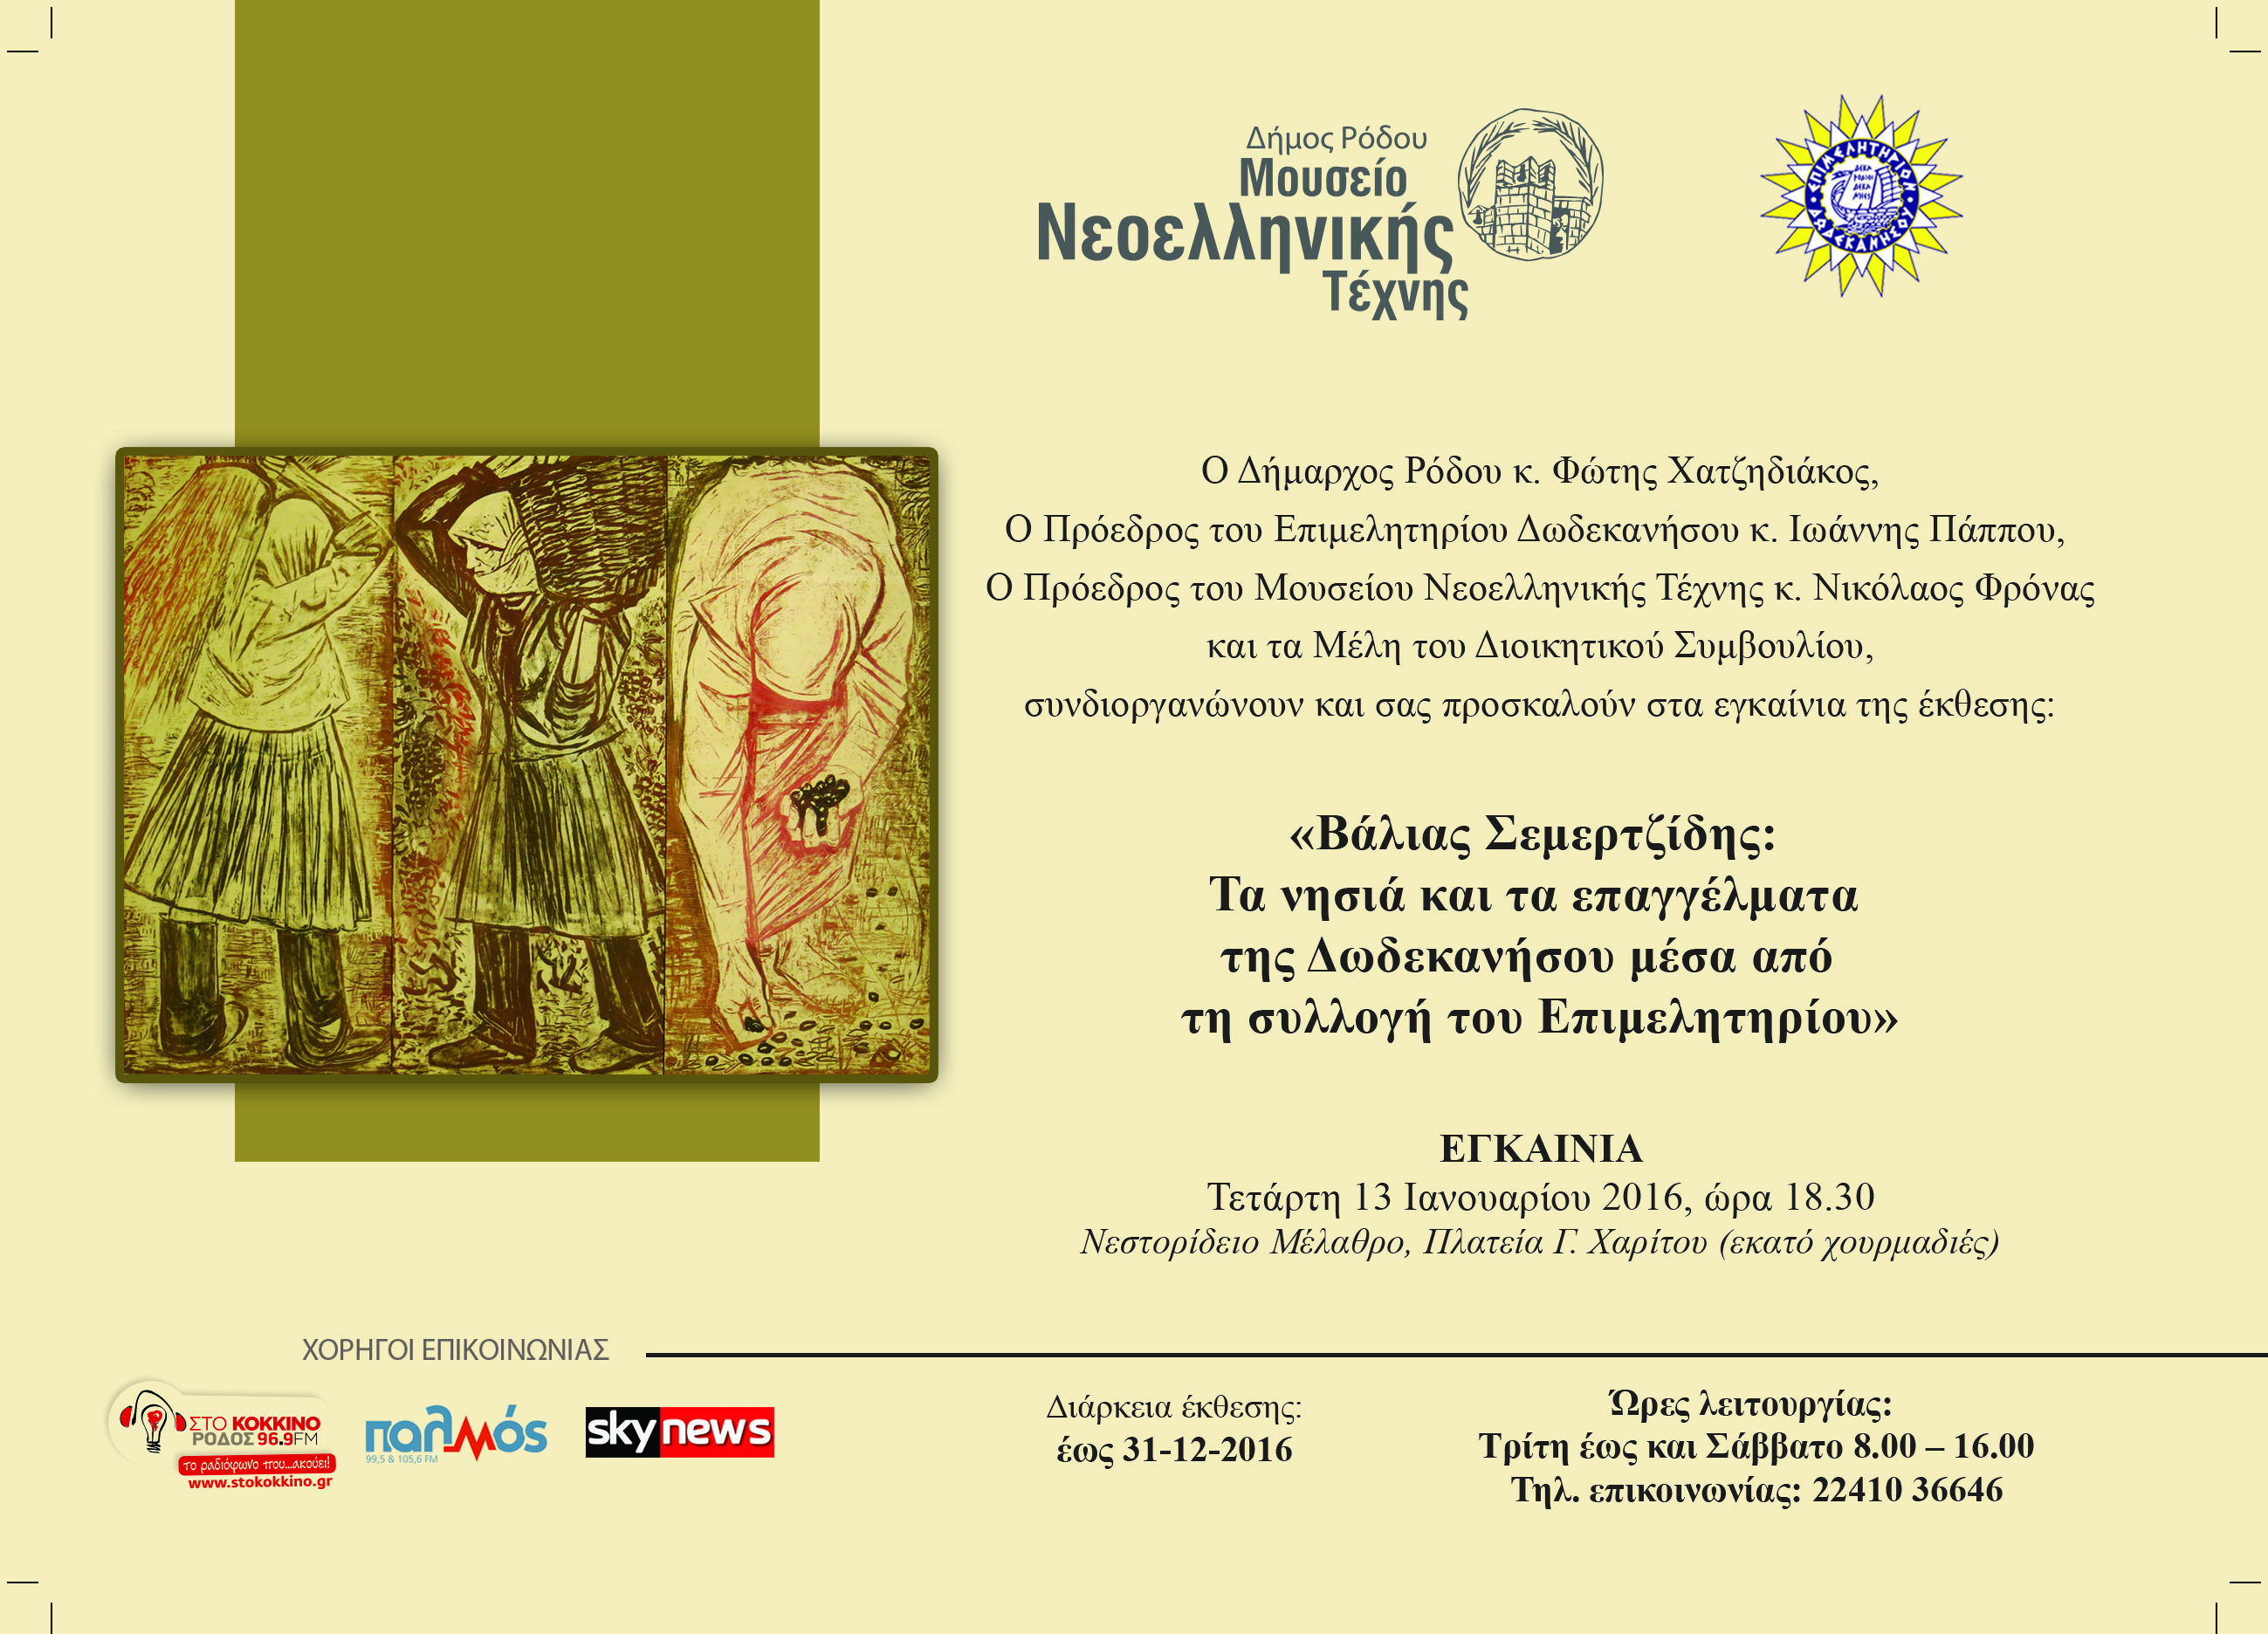 Η πρόσκληση για την έκθεση του Βάλια Σεμερτζίδη στο Μουσείο Νεοελληνικής Τέχνης Ρόδου